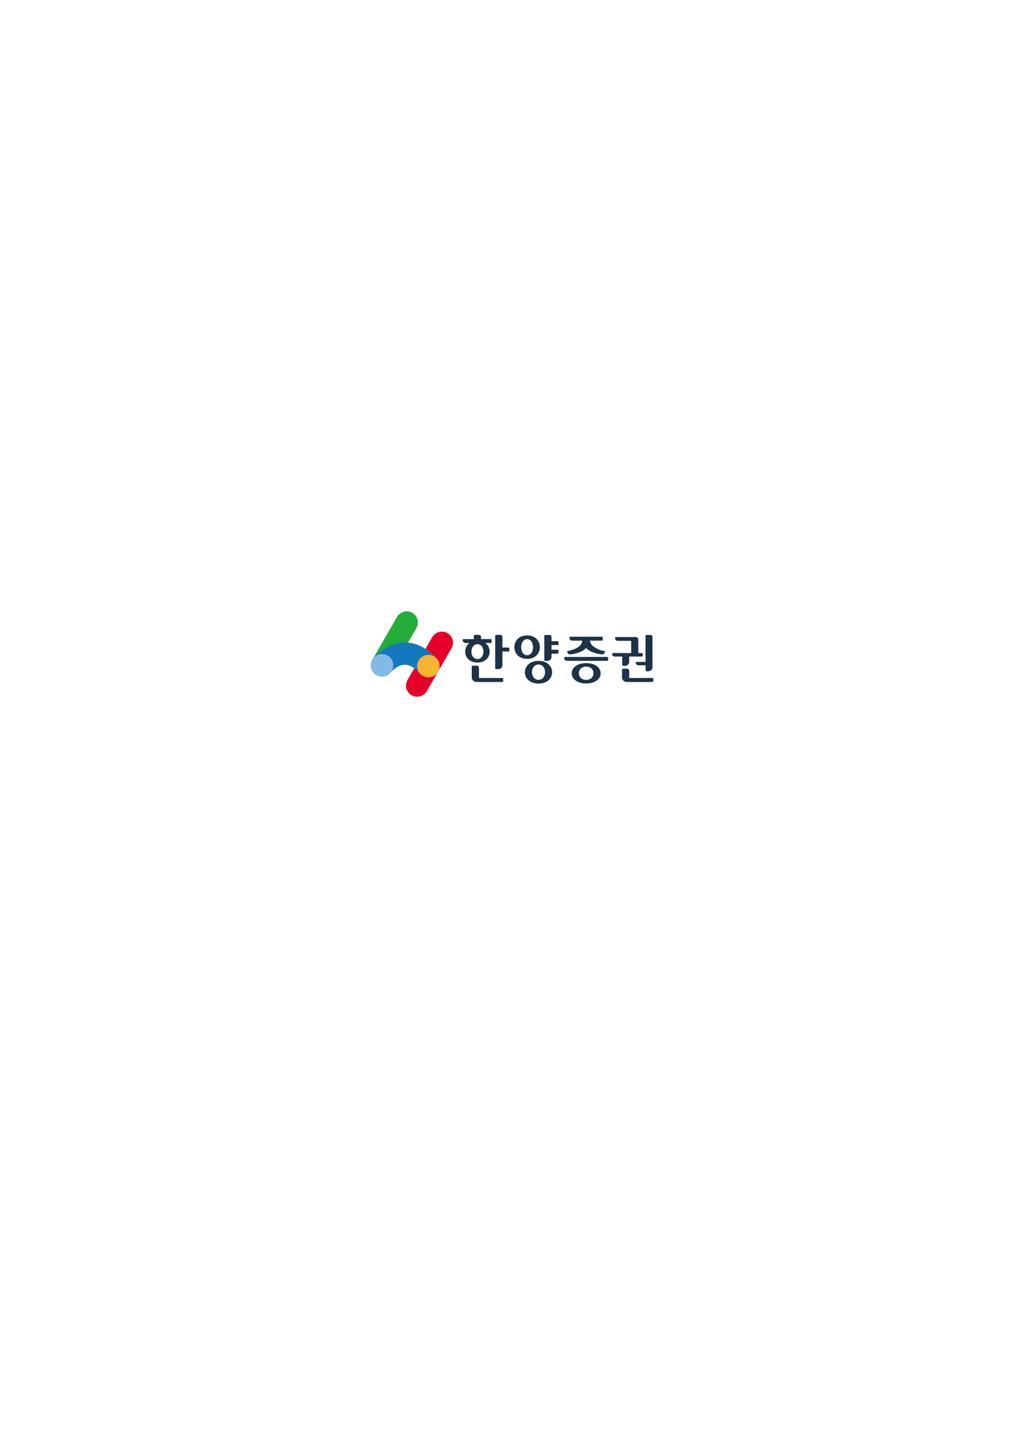 한양증권점포현황 www.hygood.co.